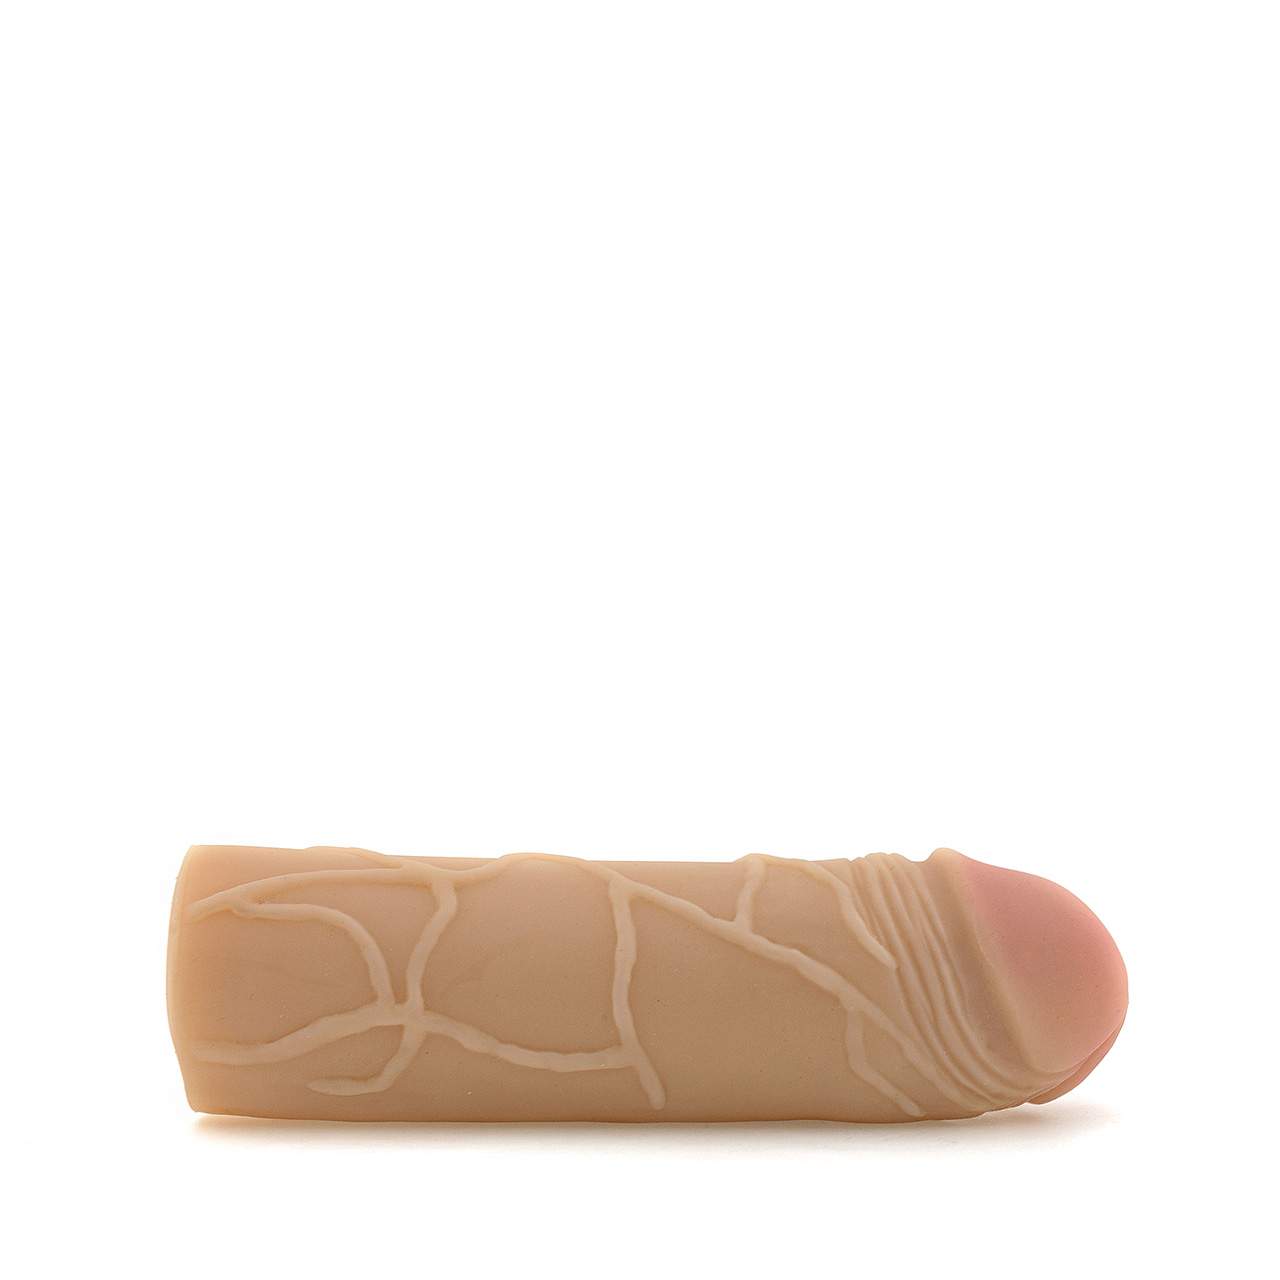 Cielista realistyczna nakładka pogrubiająca penisa – długość 17,5 cm